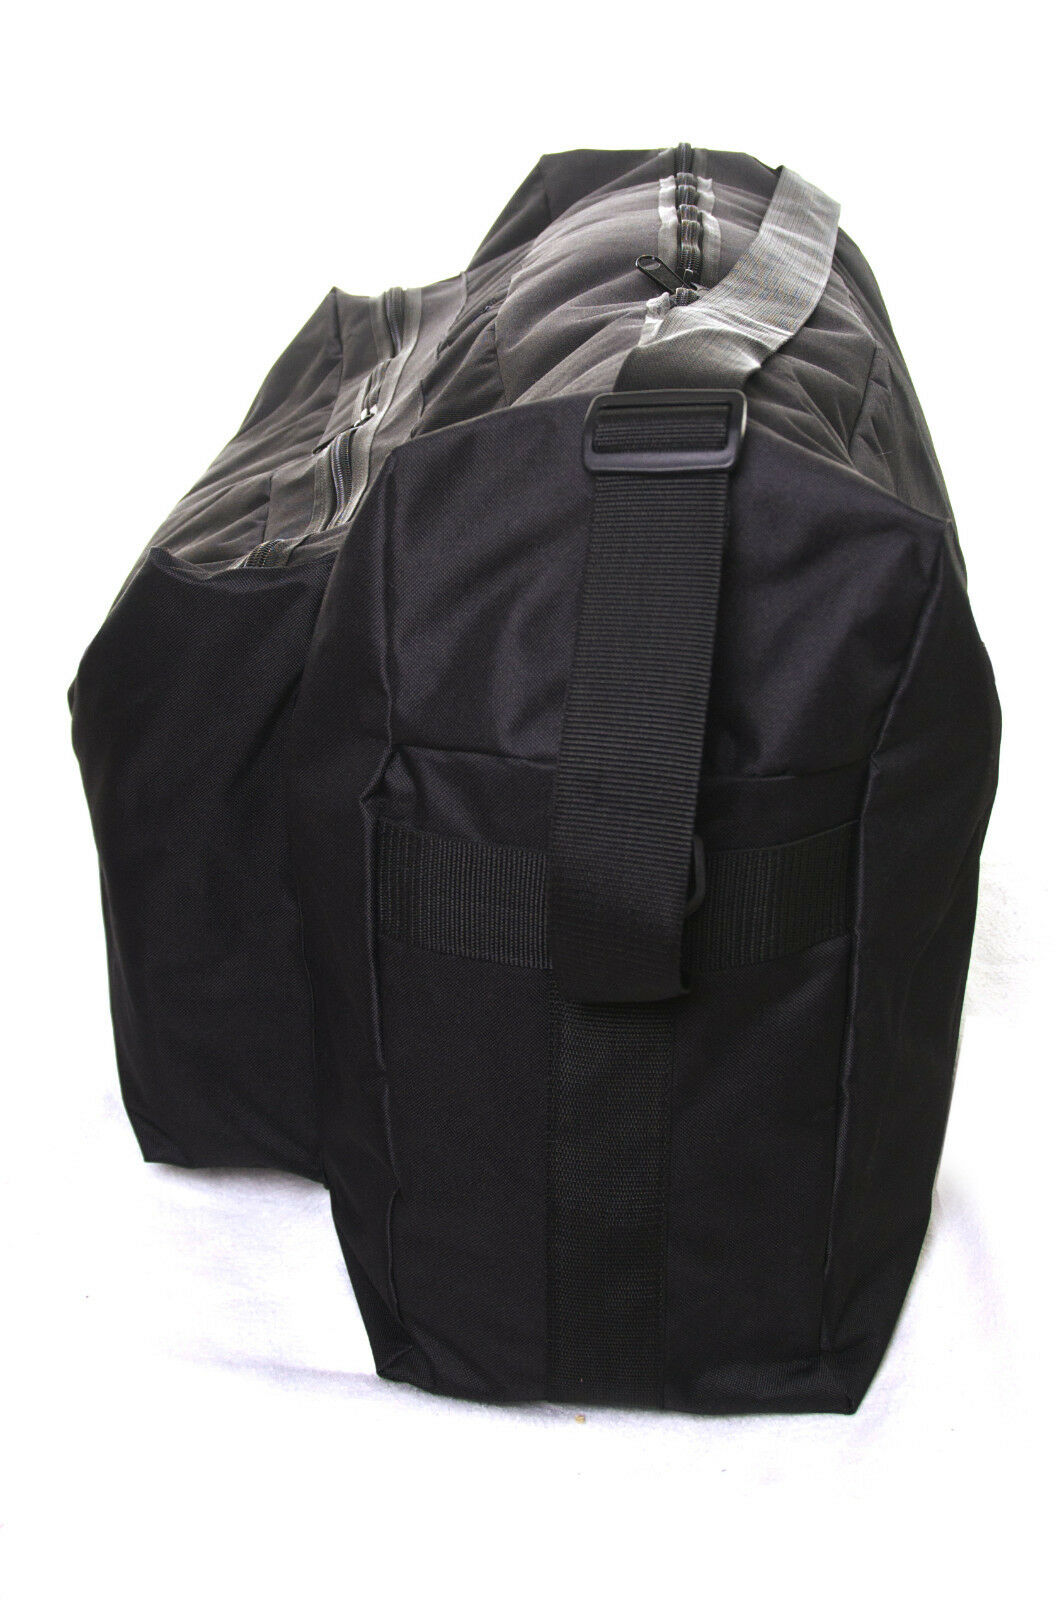 Genesis Bespoke Pushchair Travel Bags for air flights.